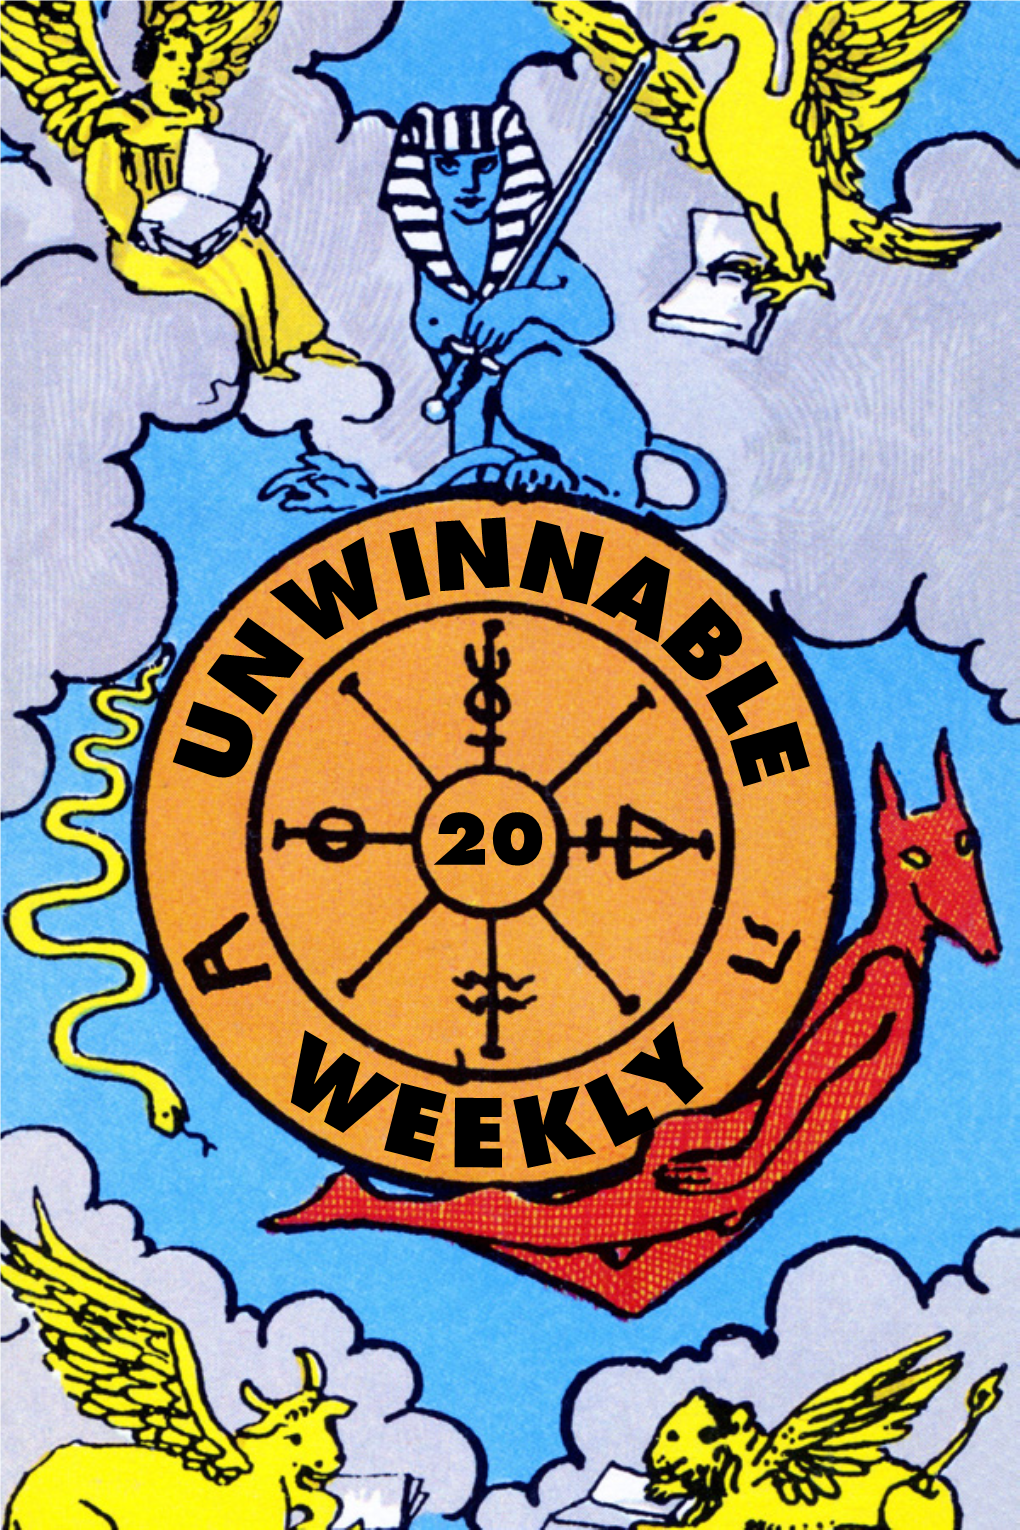 Unwinnable Weekly Issue